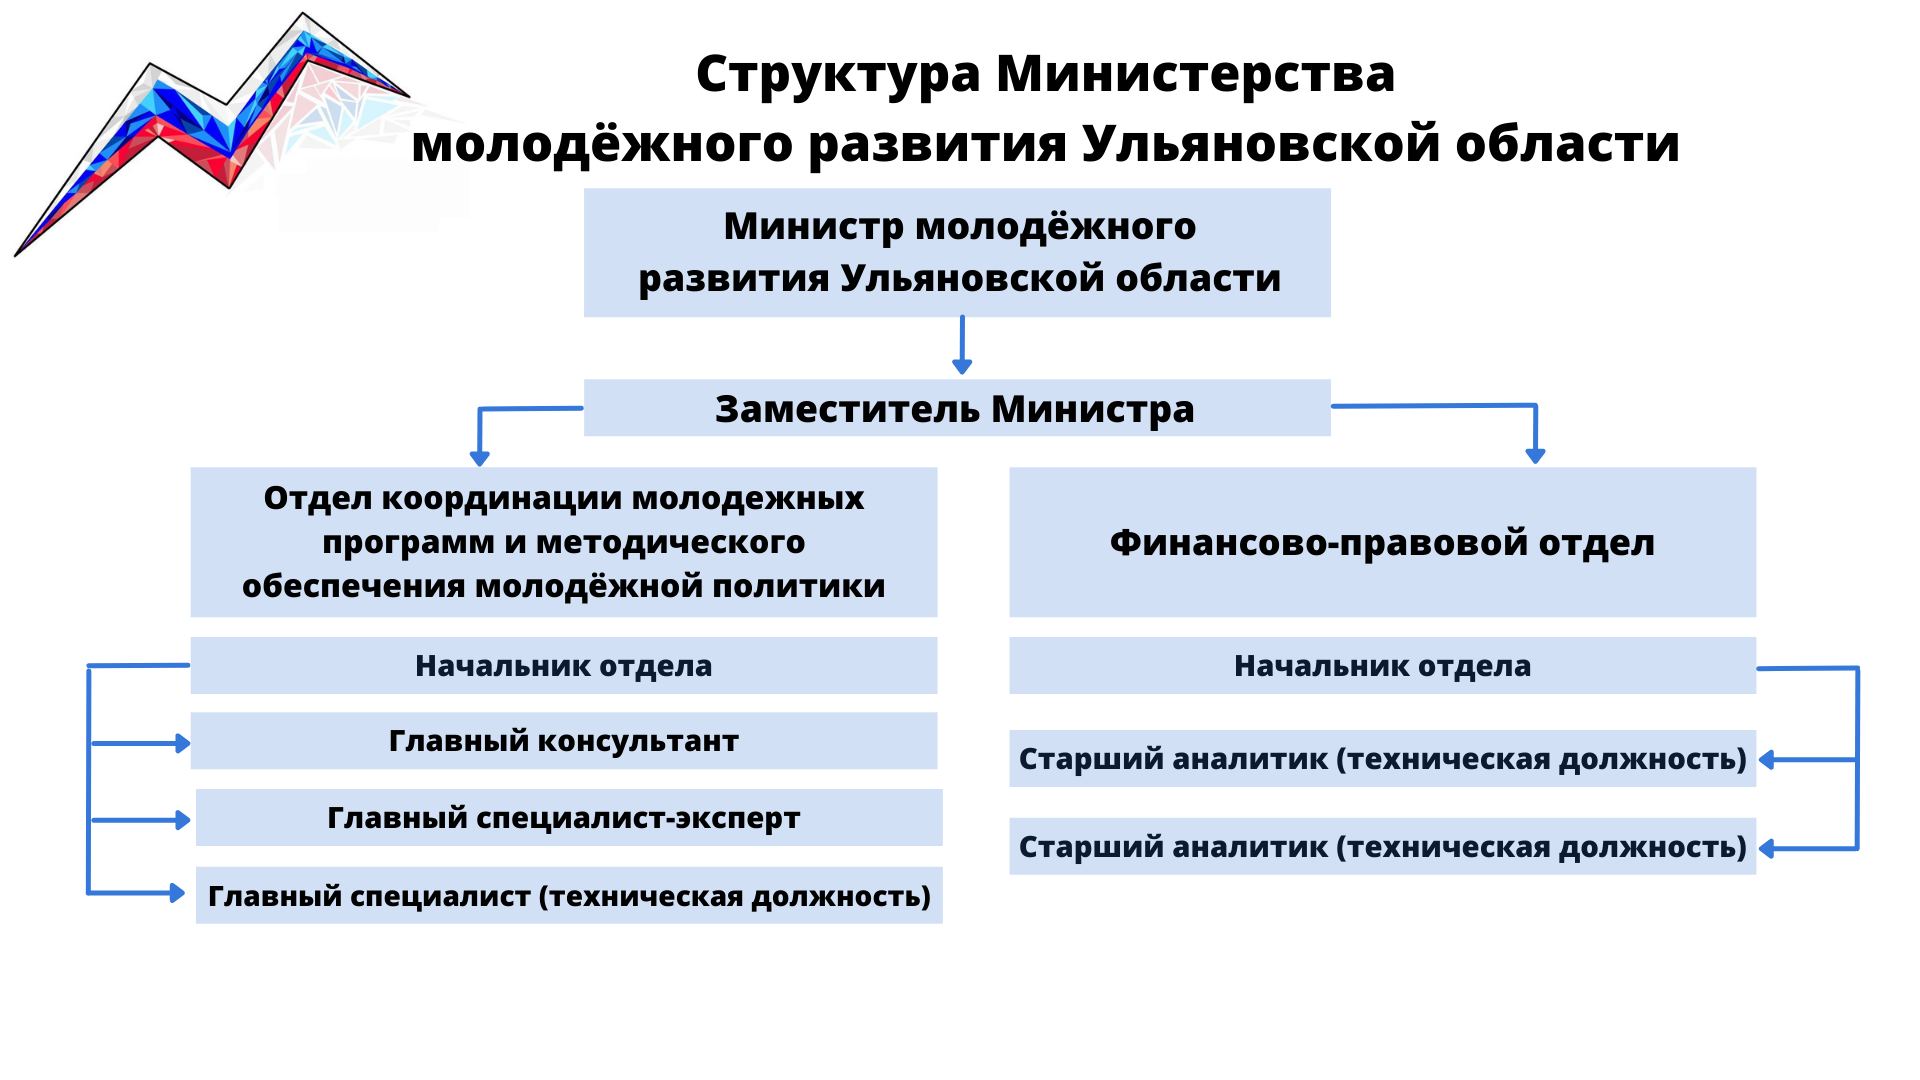 Структура Министерства молодежного развития Ульяновской области